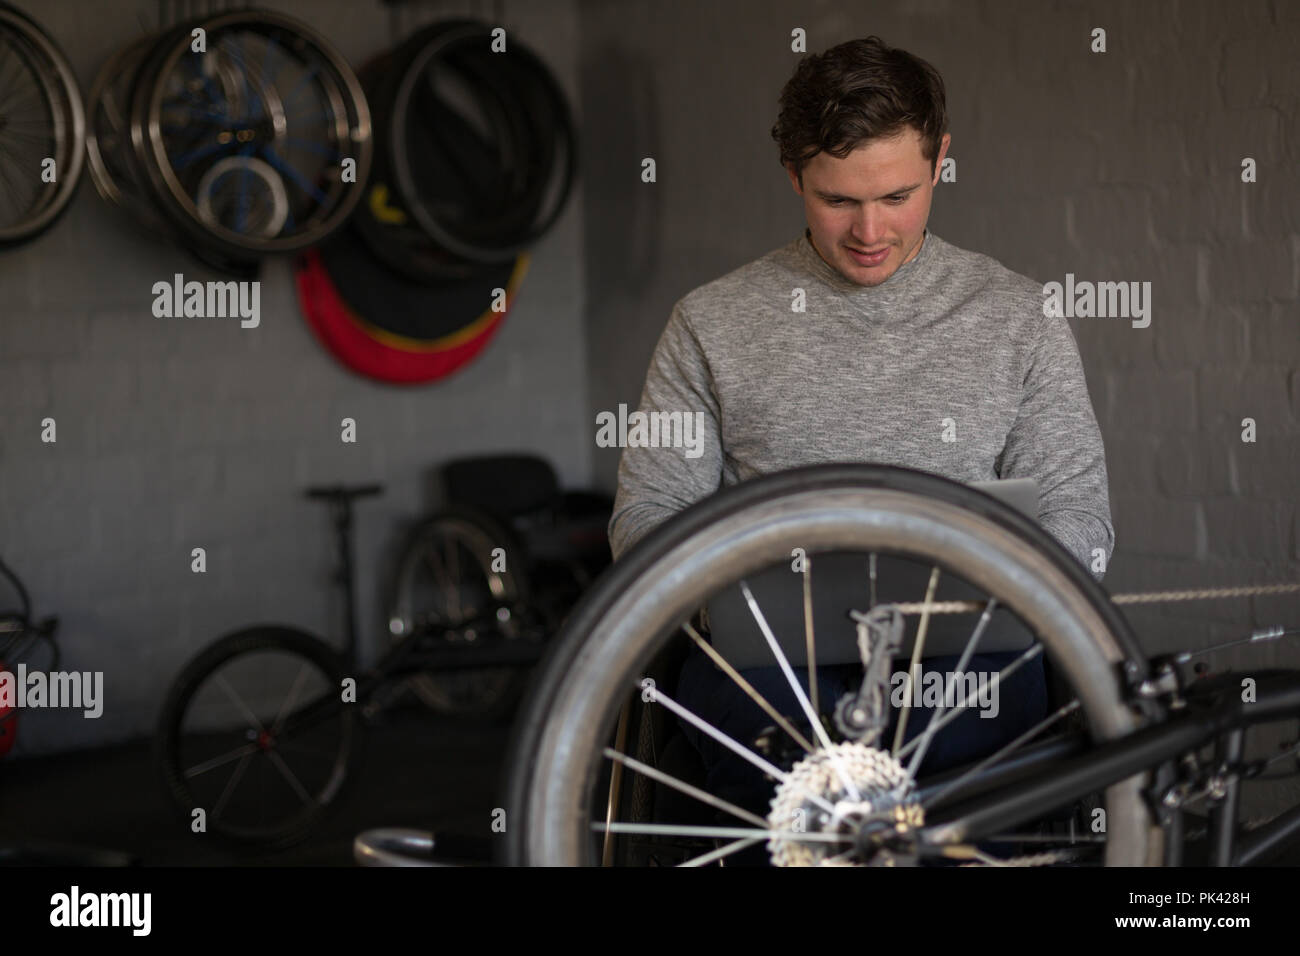 Homme handicapé en fauteuil roulant lors de l'atelier de réparation Banque D'Images